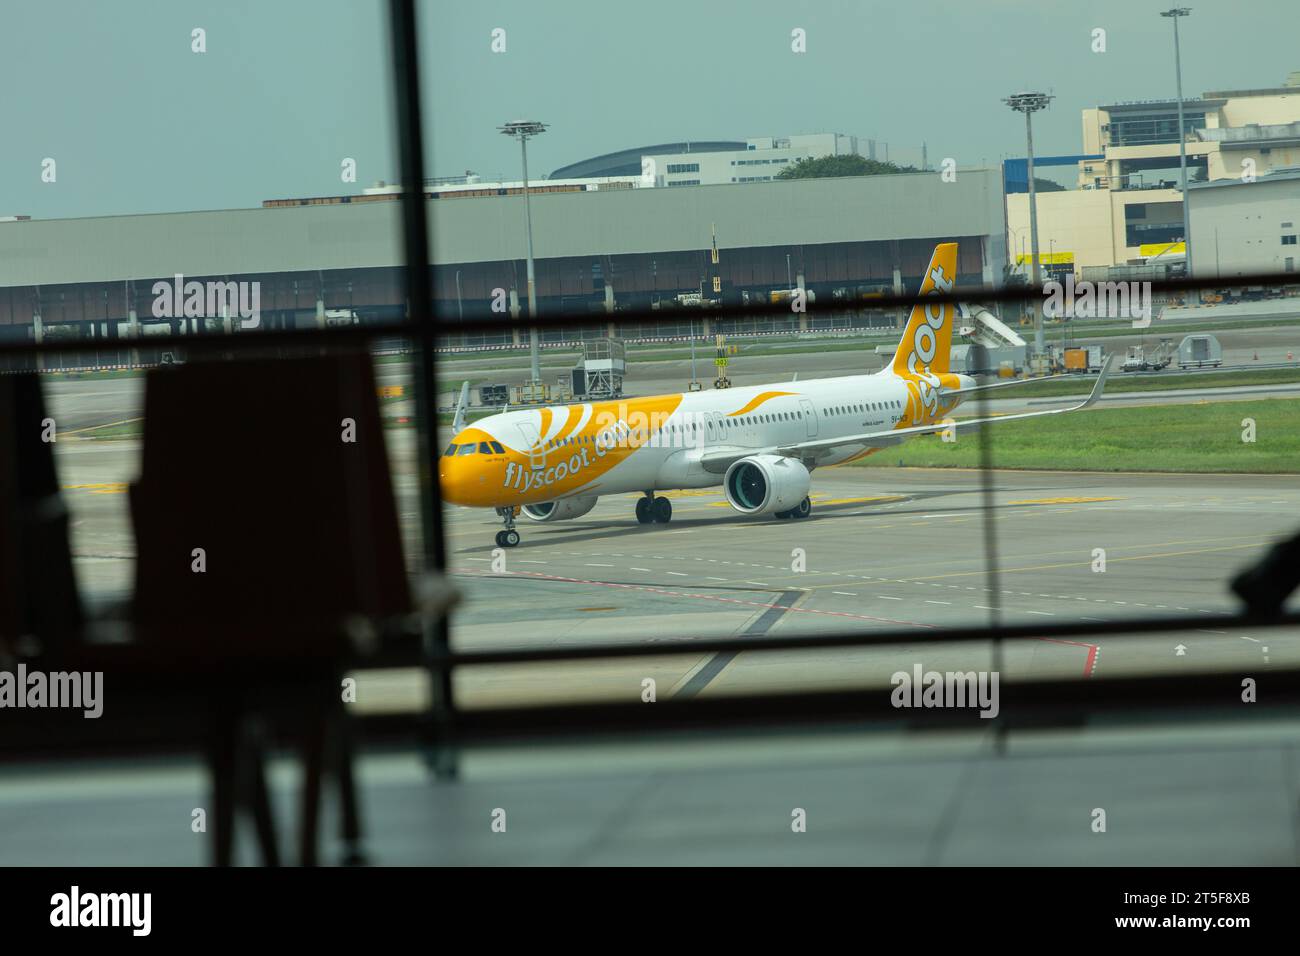 Aeromobili Airbus A321-271NX arrivo a terra. Scoot Airline è una compagnia aerea low cost a lungo raggio, l'Aeroporto di Singapore Changi. Foto Stock